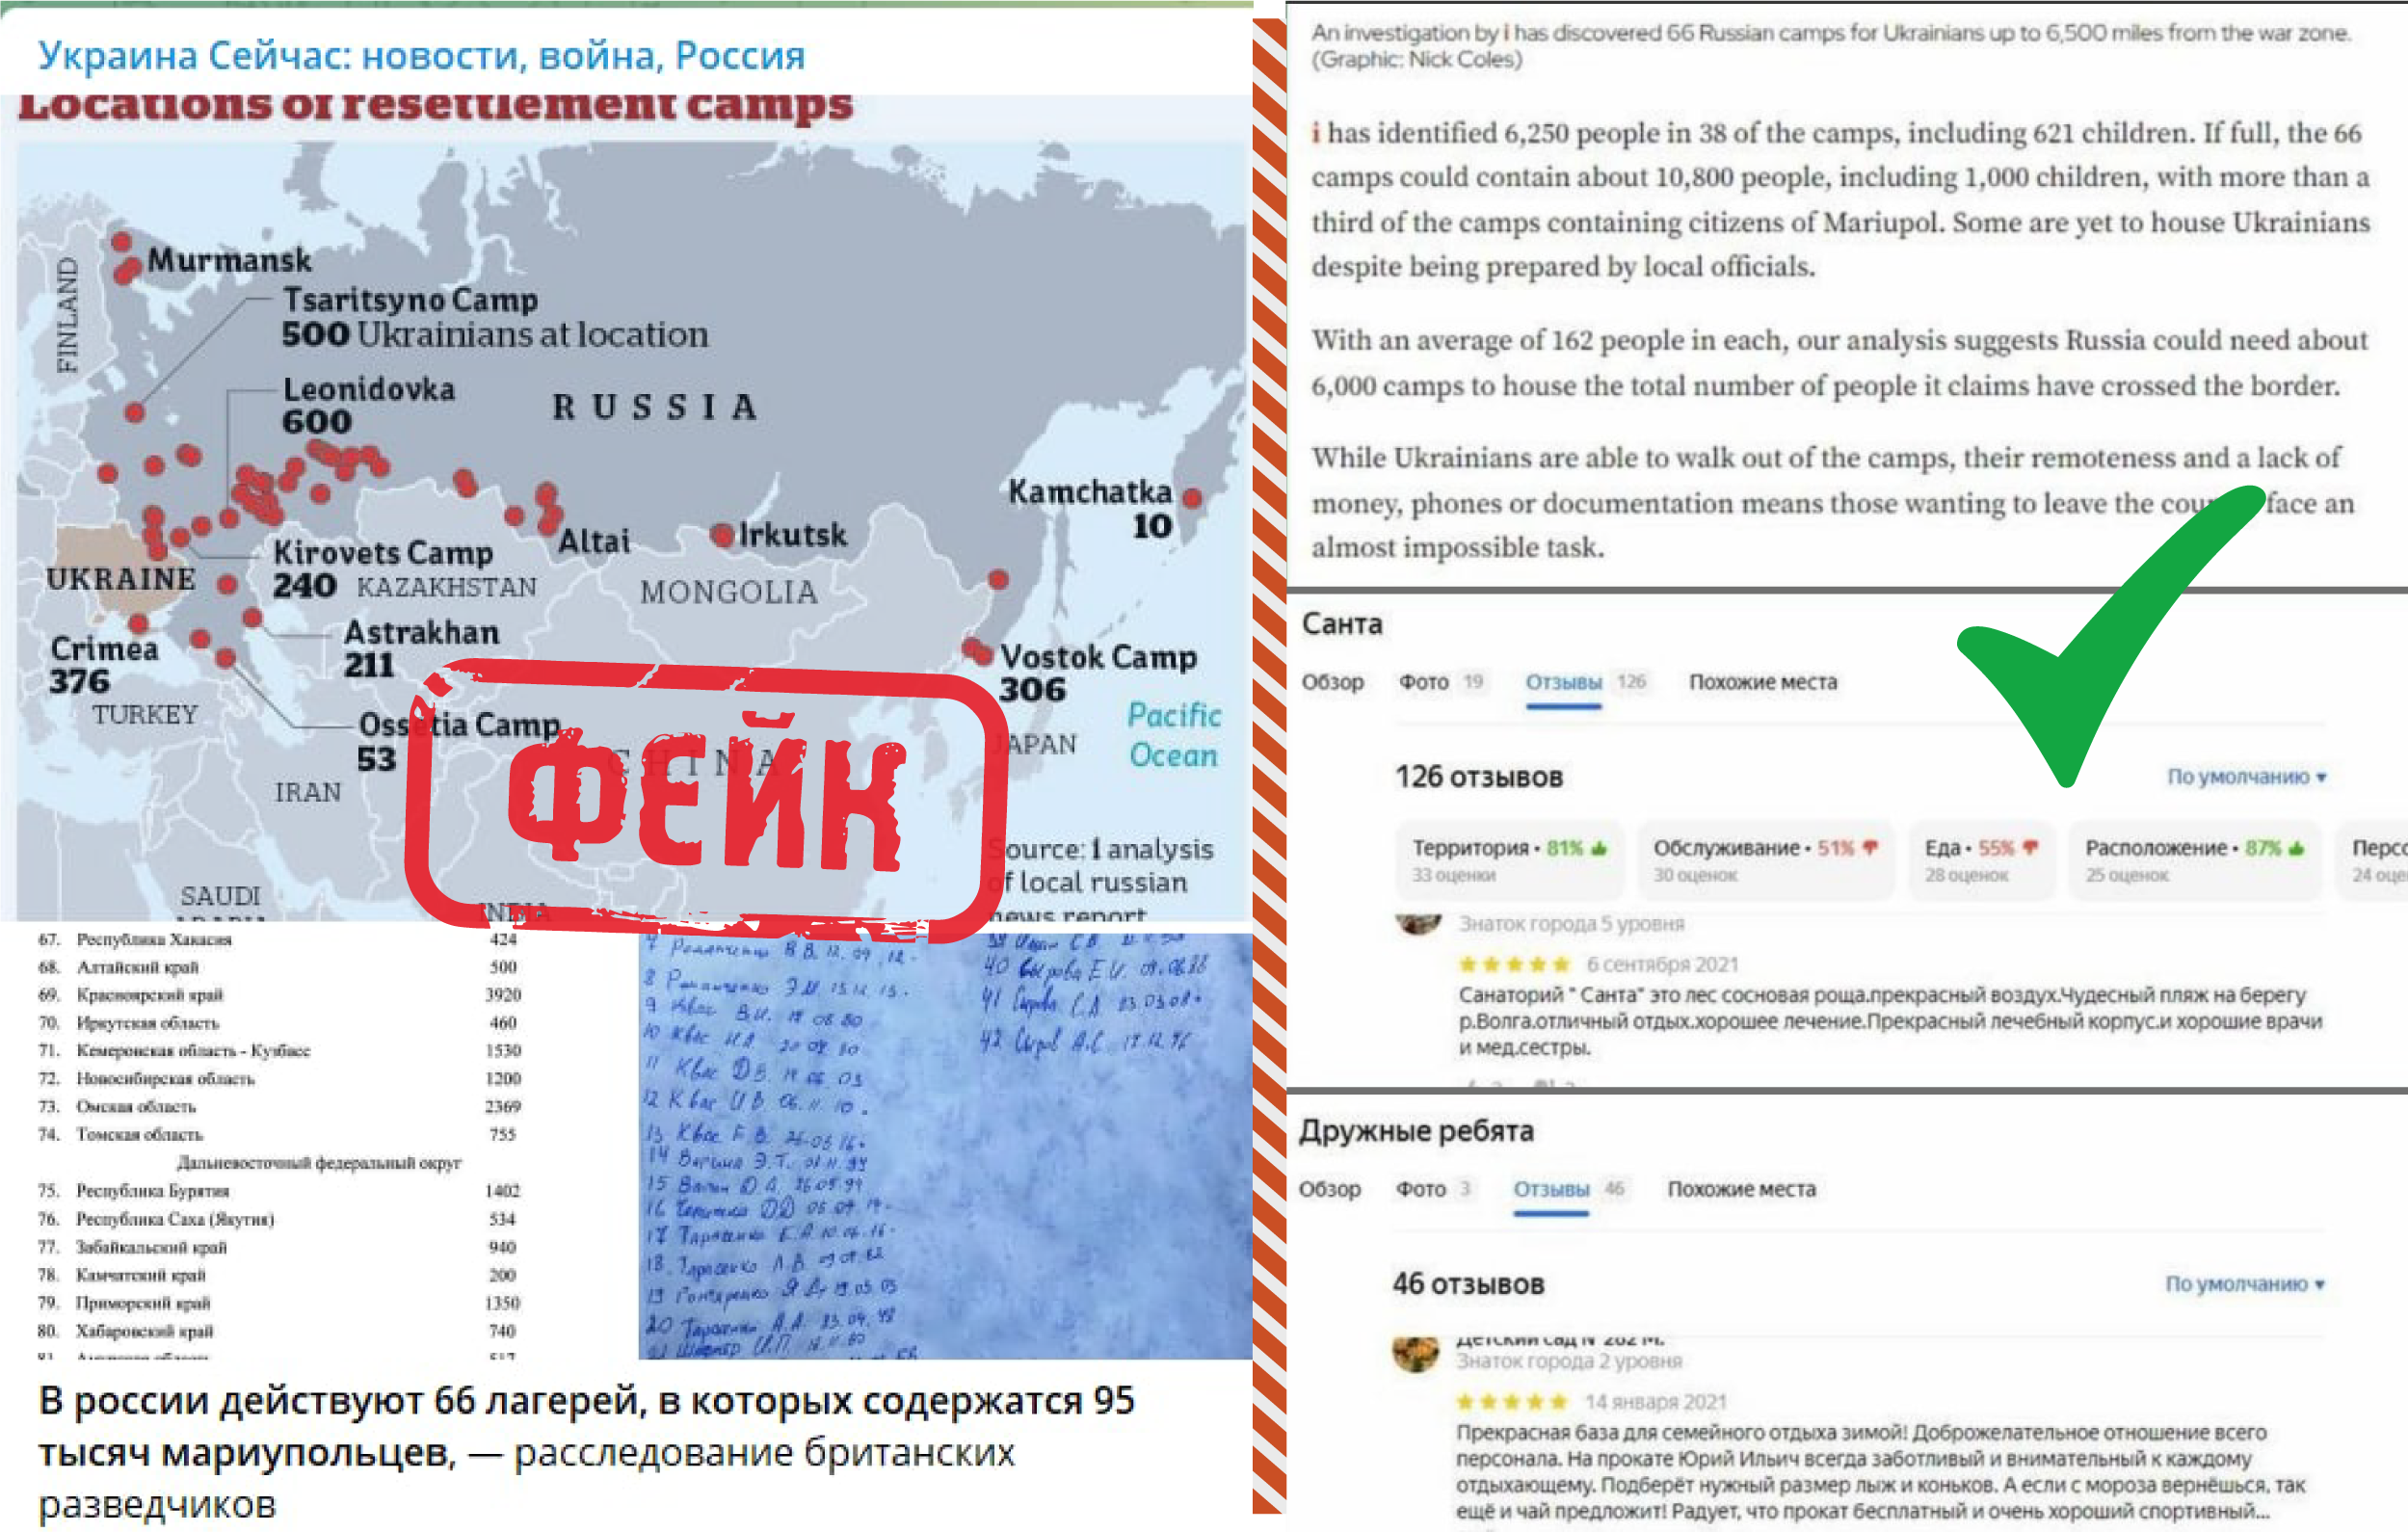 Страна украина телеграмм